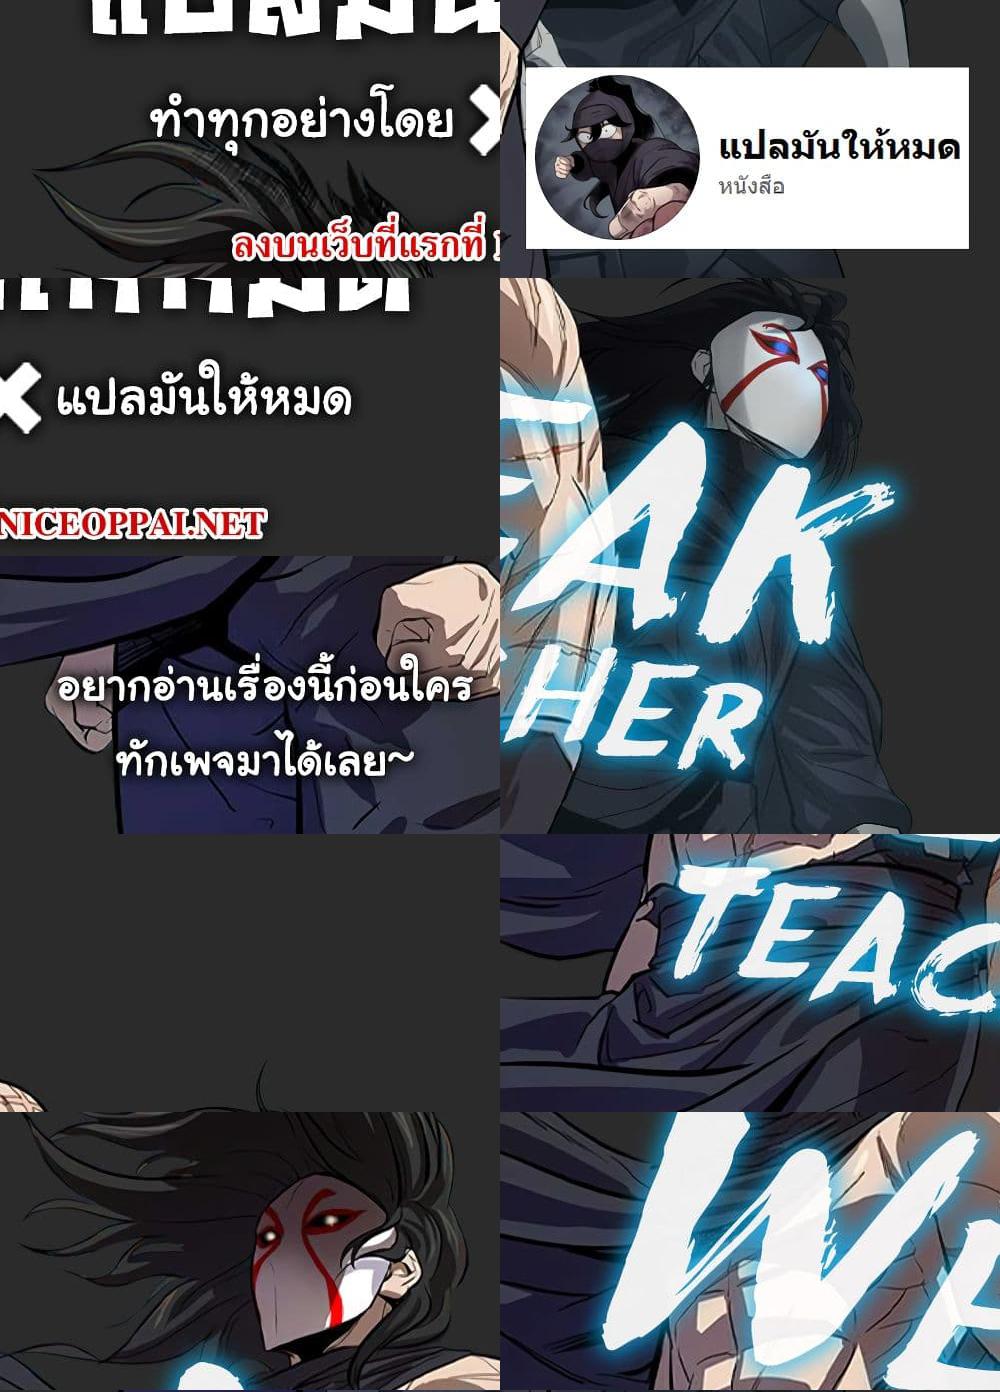 Weak Teacher - 16 - 1